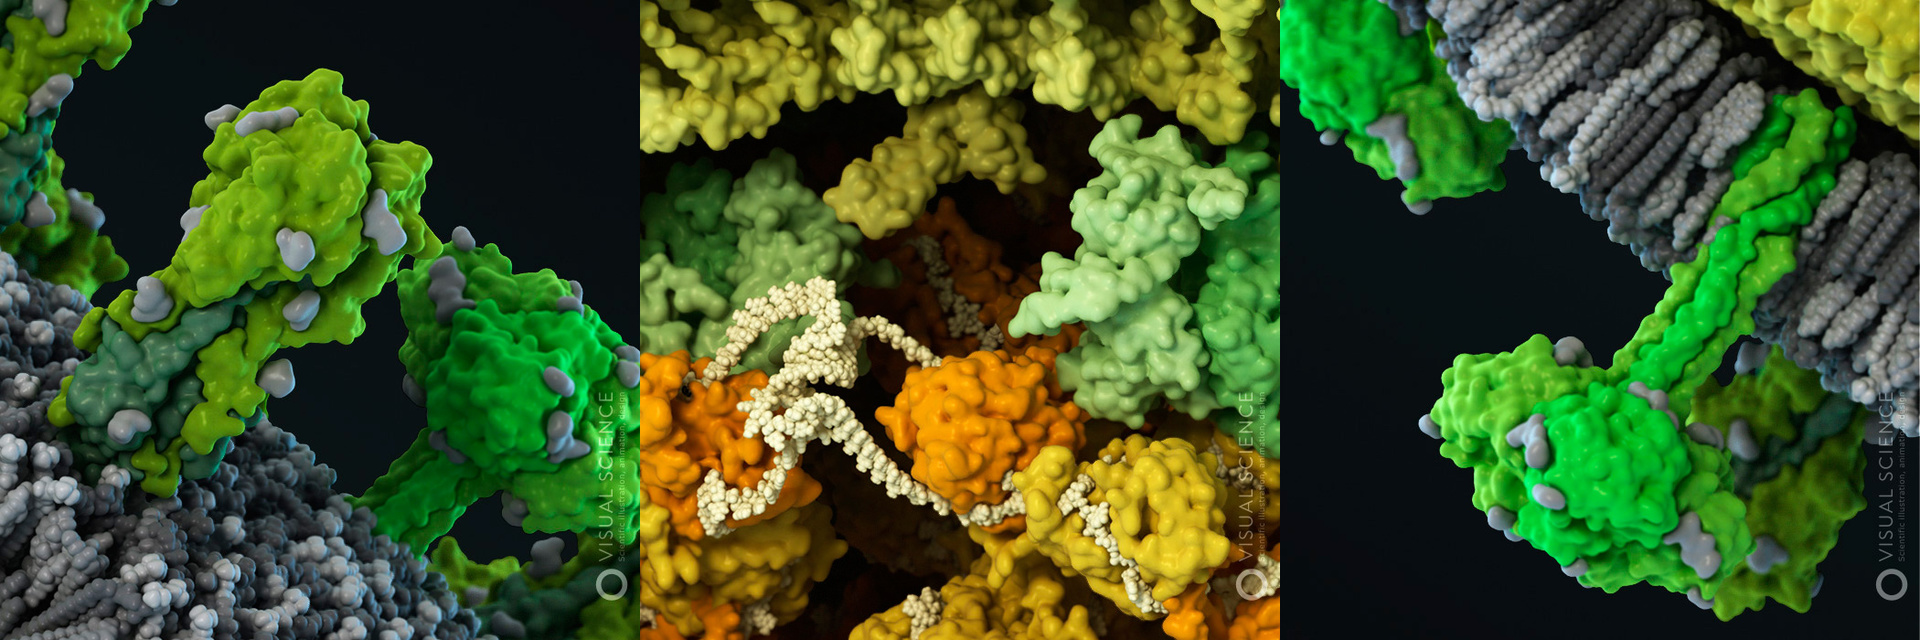 3D модели вирусов человека. Часть вторая: молекулярное моделирование и биоинформатика